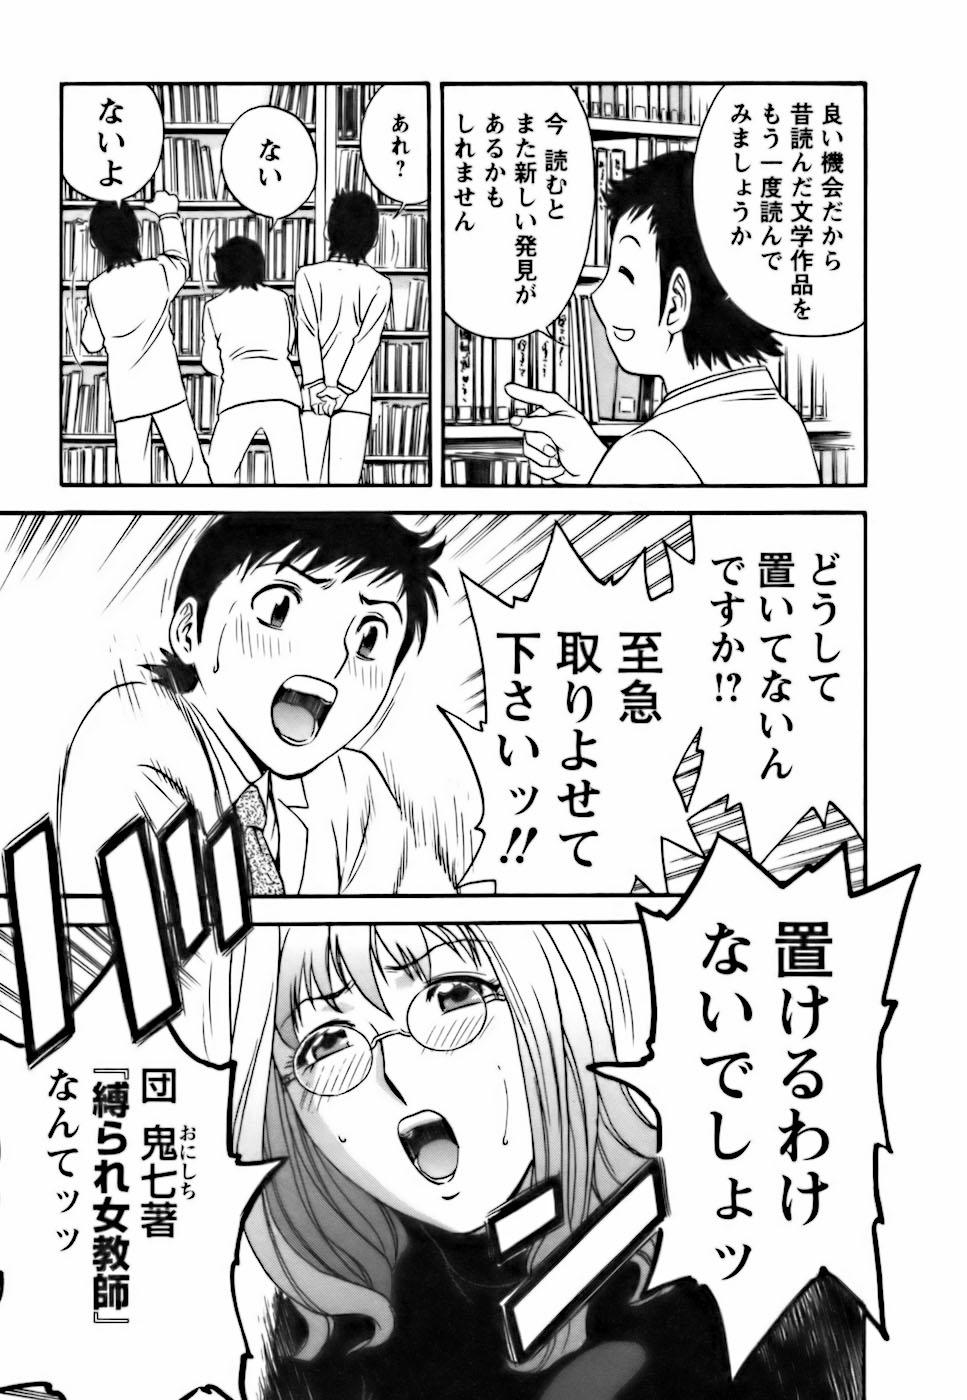 [Hidemaru] Mo-Retsu! Boin Sensei (Boing Boing Teacher) Vol.3 90